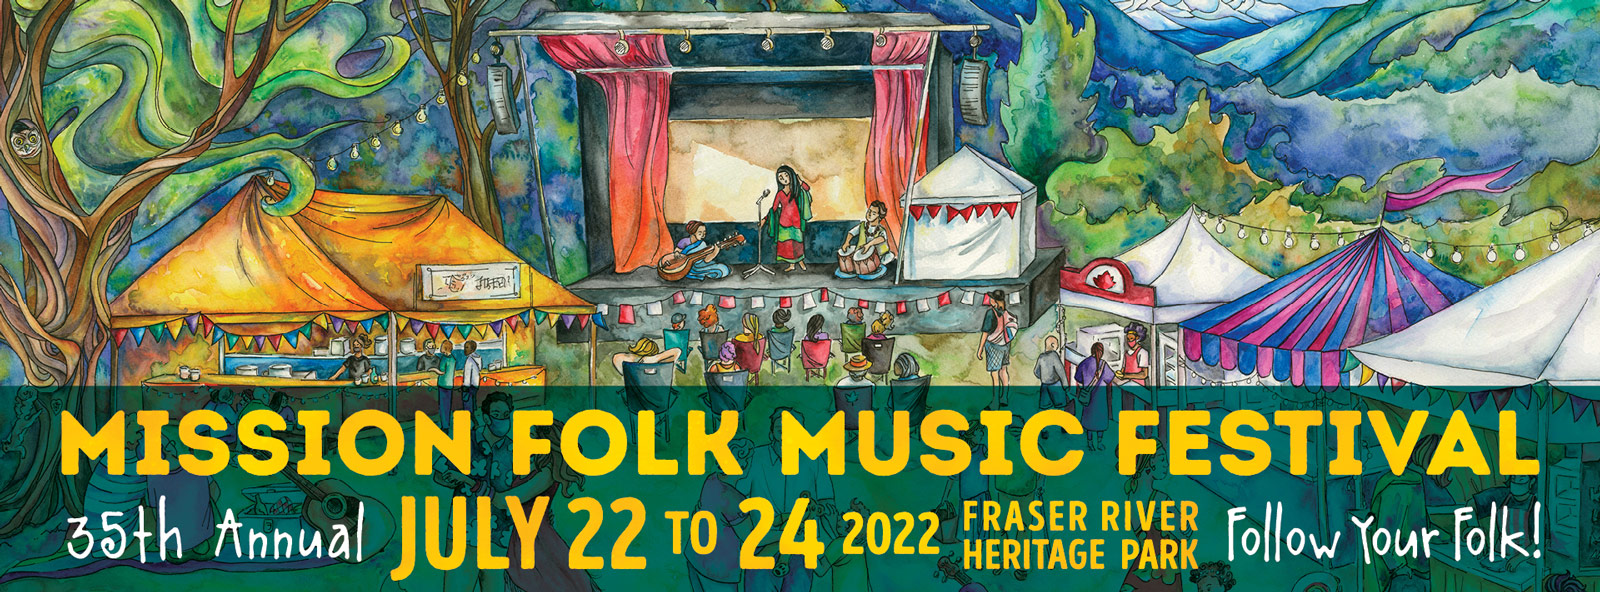 Mission Folk Music Festival Follow your folk